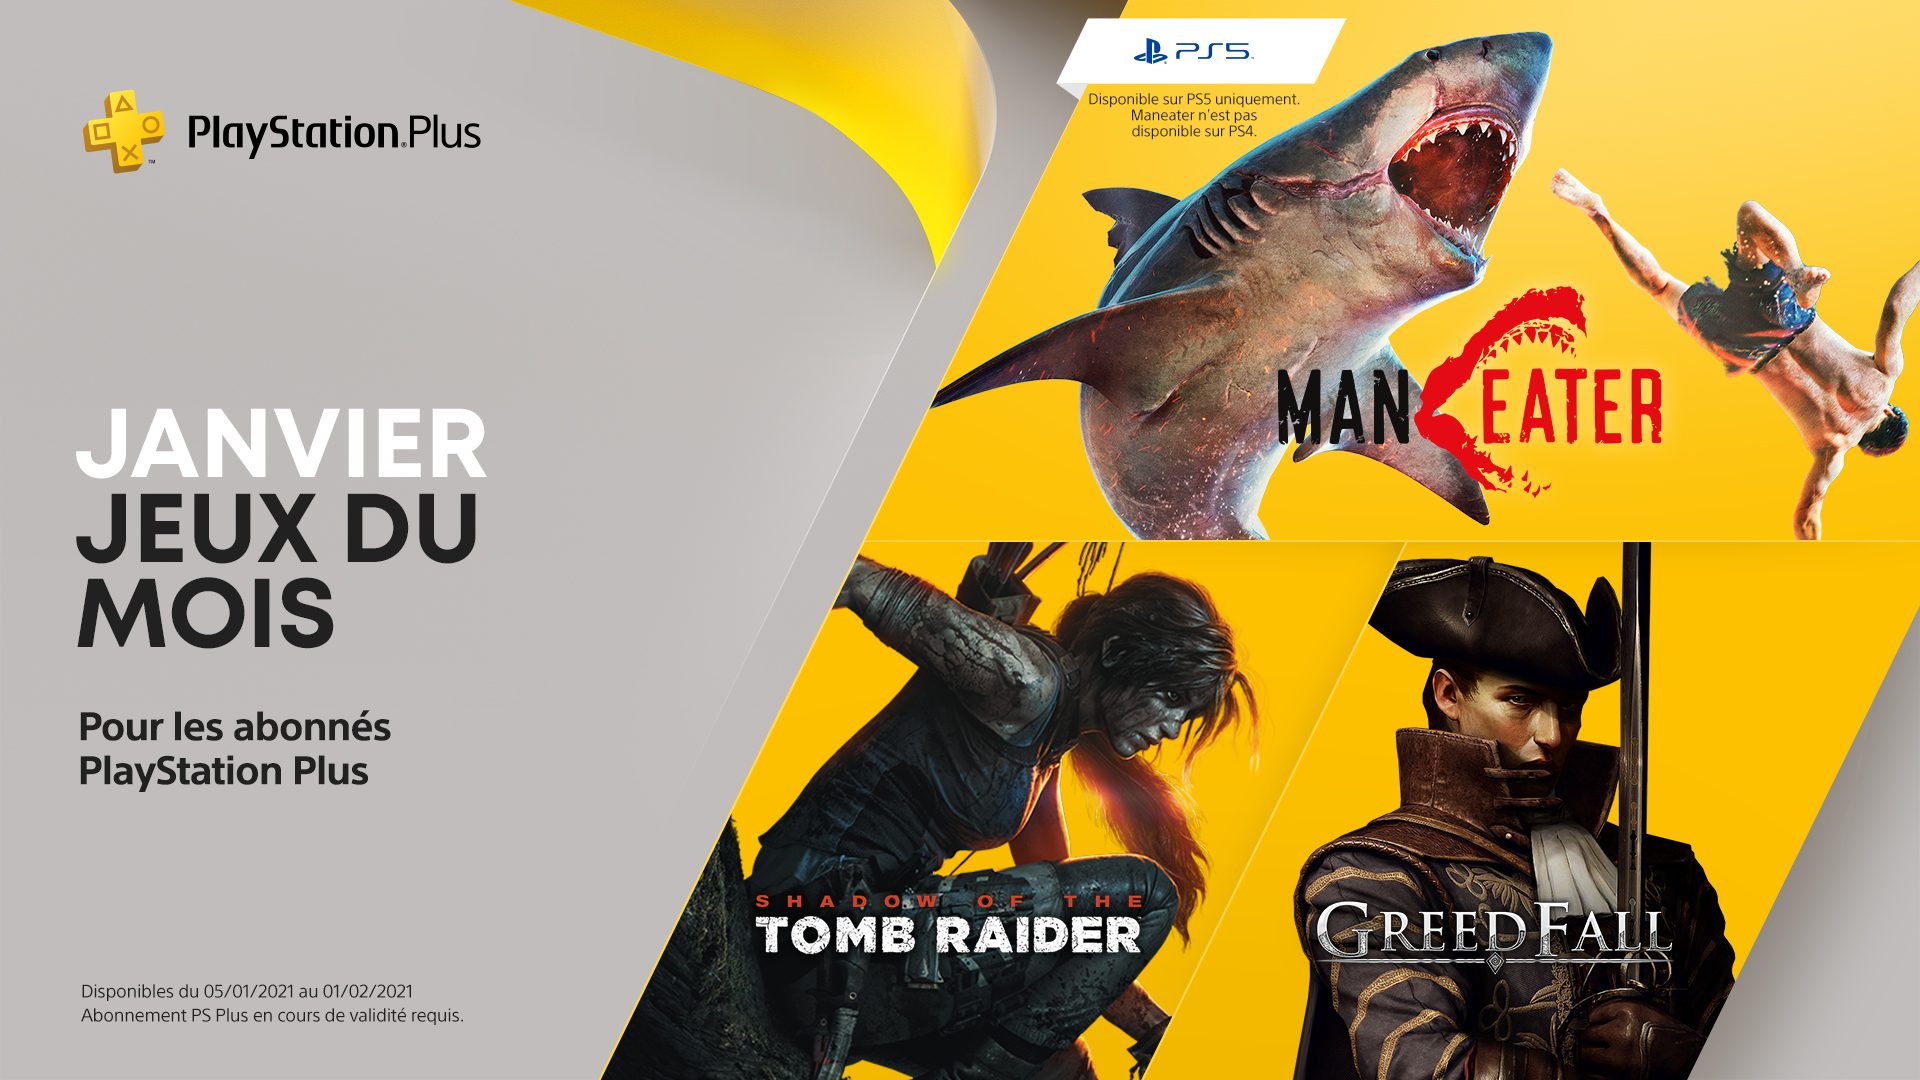 Commentaires sur Les jeux PlayStation Plus du mois de janvier : Maneater, Shadow of the Tomb Raider et Greedfall par DmC33